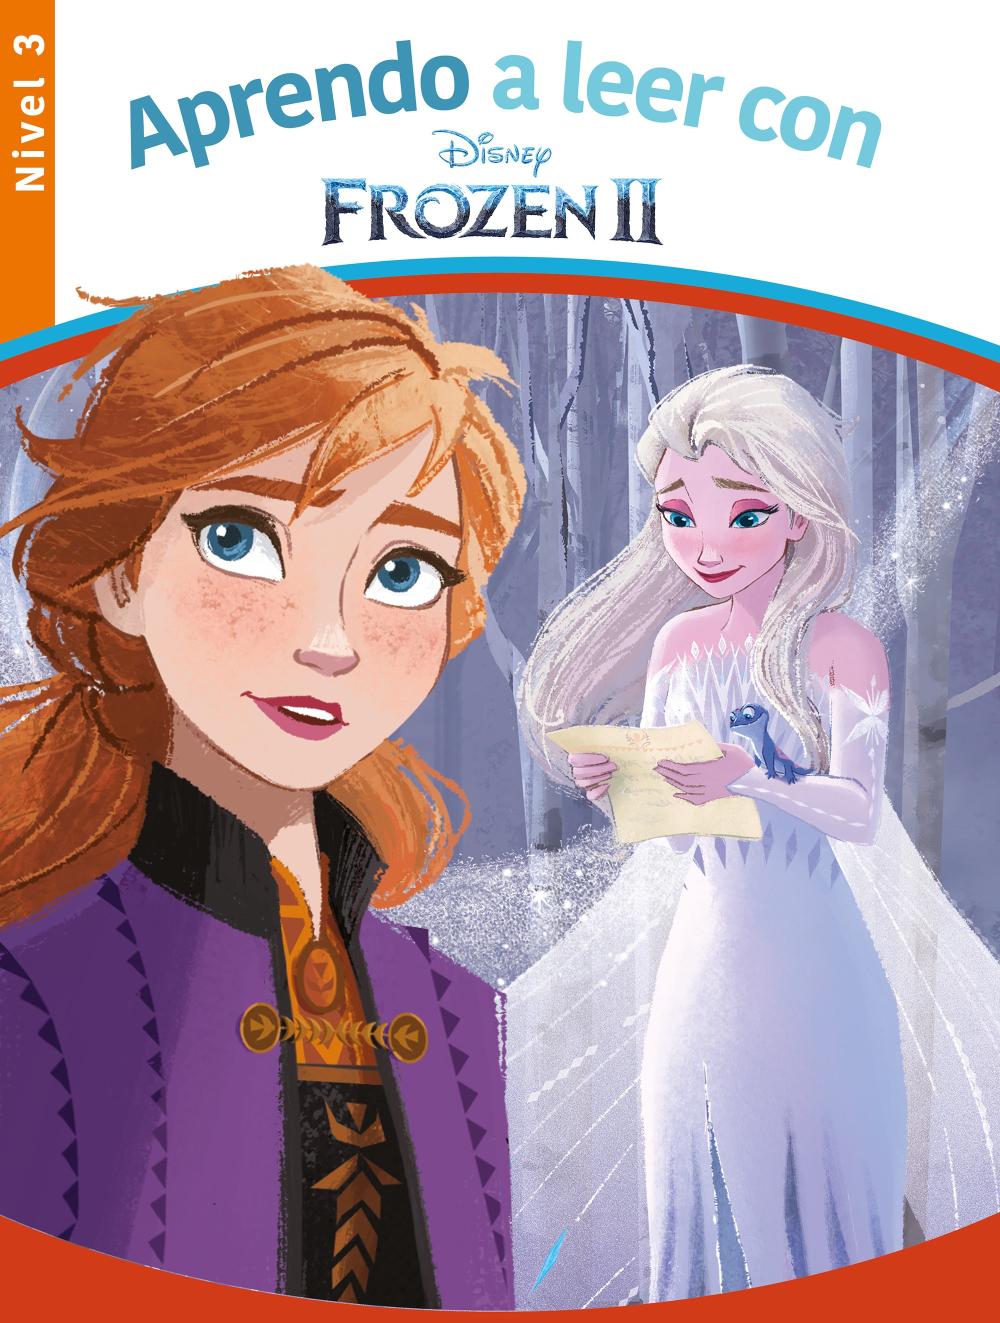 Aprendo a leer con Frozen II - Nivel 3 (Aprendo a leer con Disney)